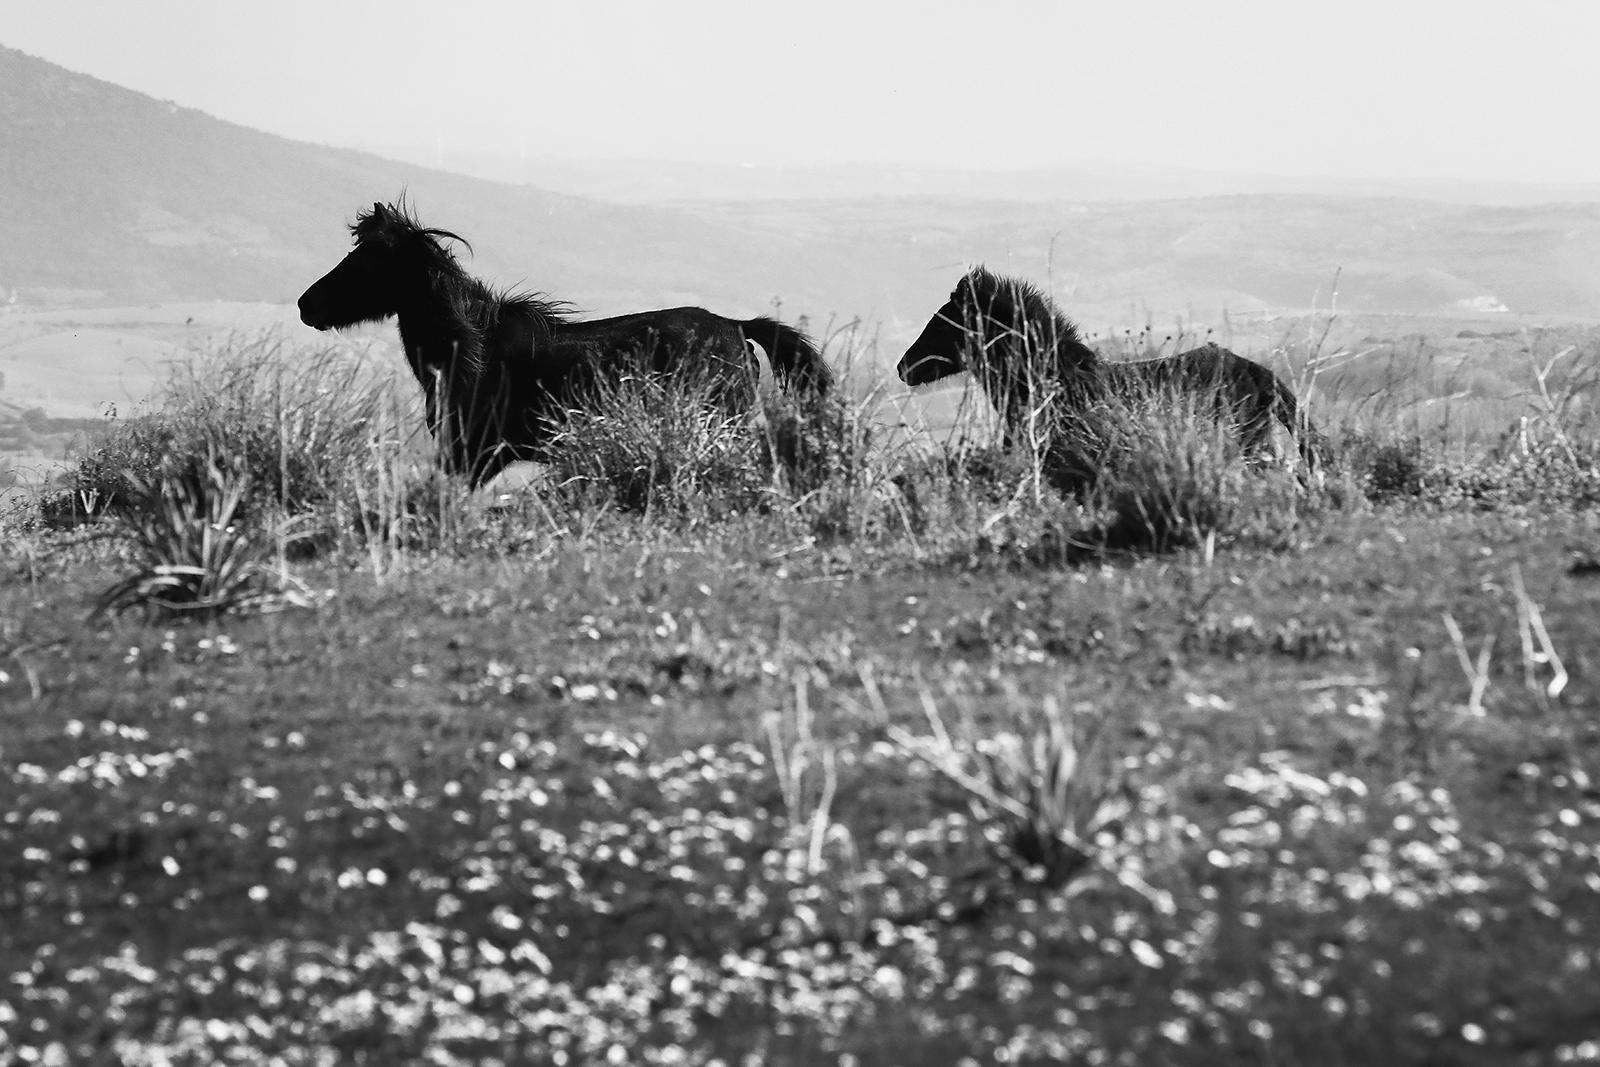 Still-Life Photograph Laurent Campus - Cavallini 02 - Impression animalière en édition limitée signée, noir et blanc, cheval sauvage